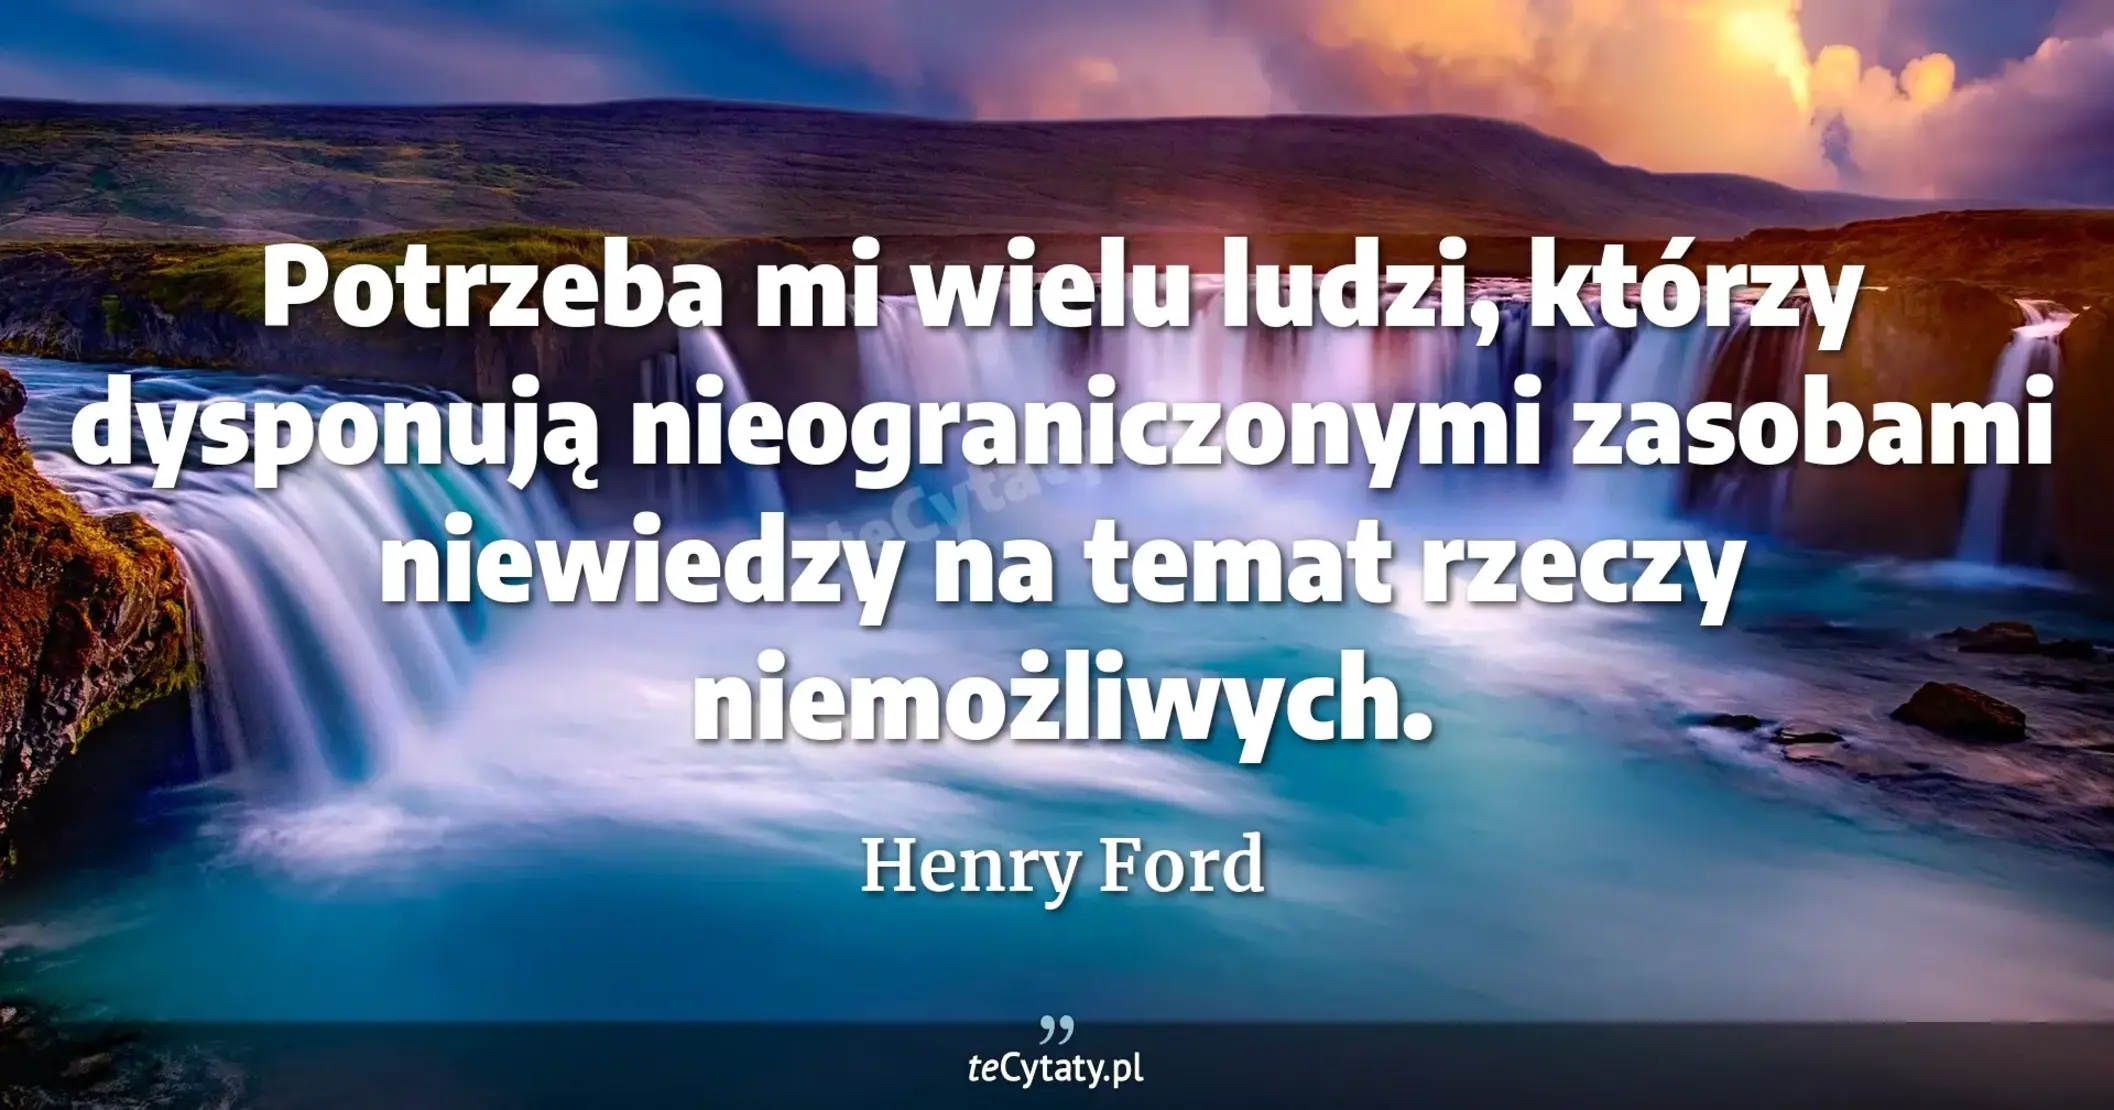 Potrzeba mi wielu ludzi, którzy dysponują nieograniczonymi zasobami niewiedzy na temat rzeczy niemożliwych. - Henry Ford